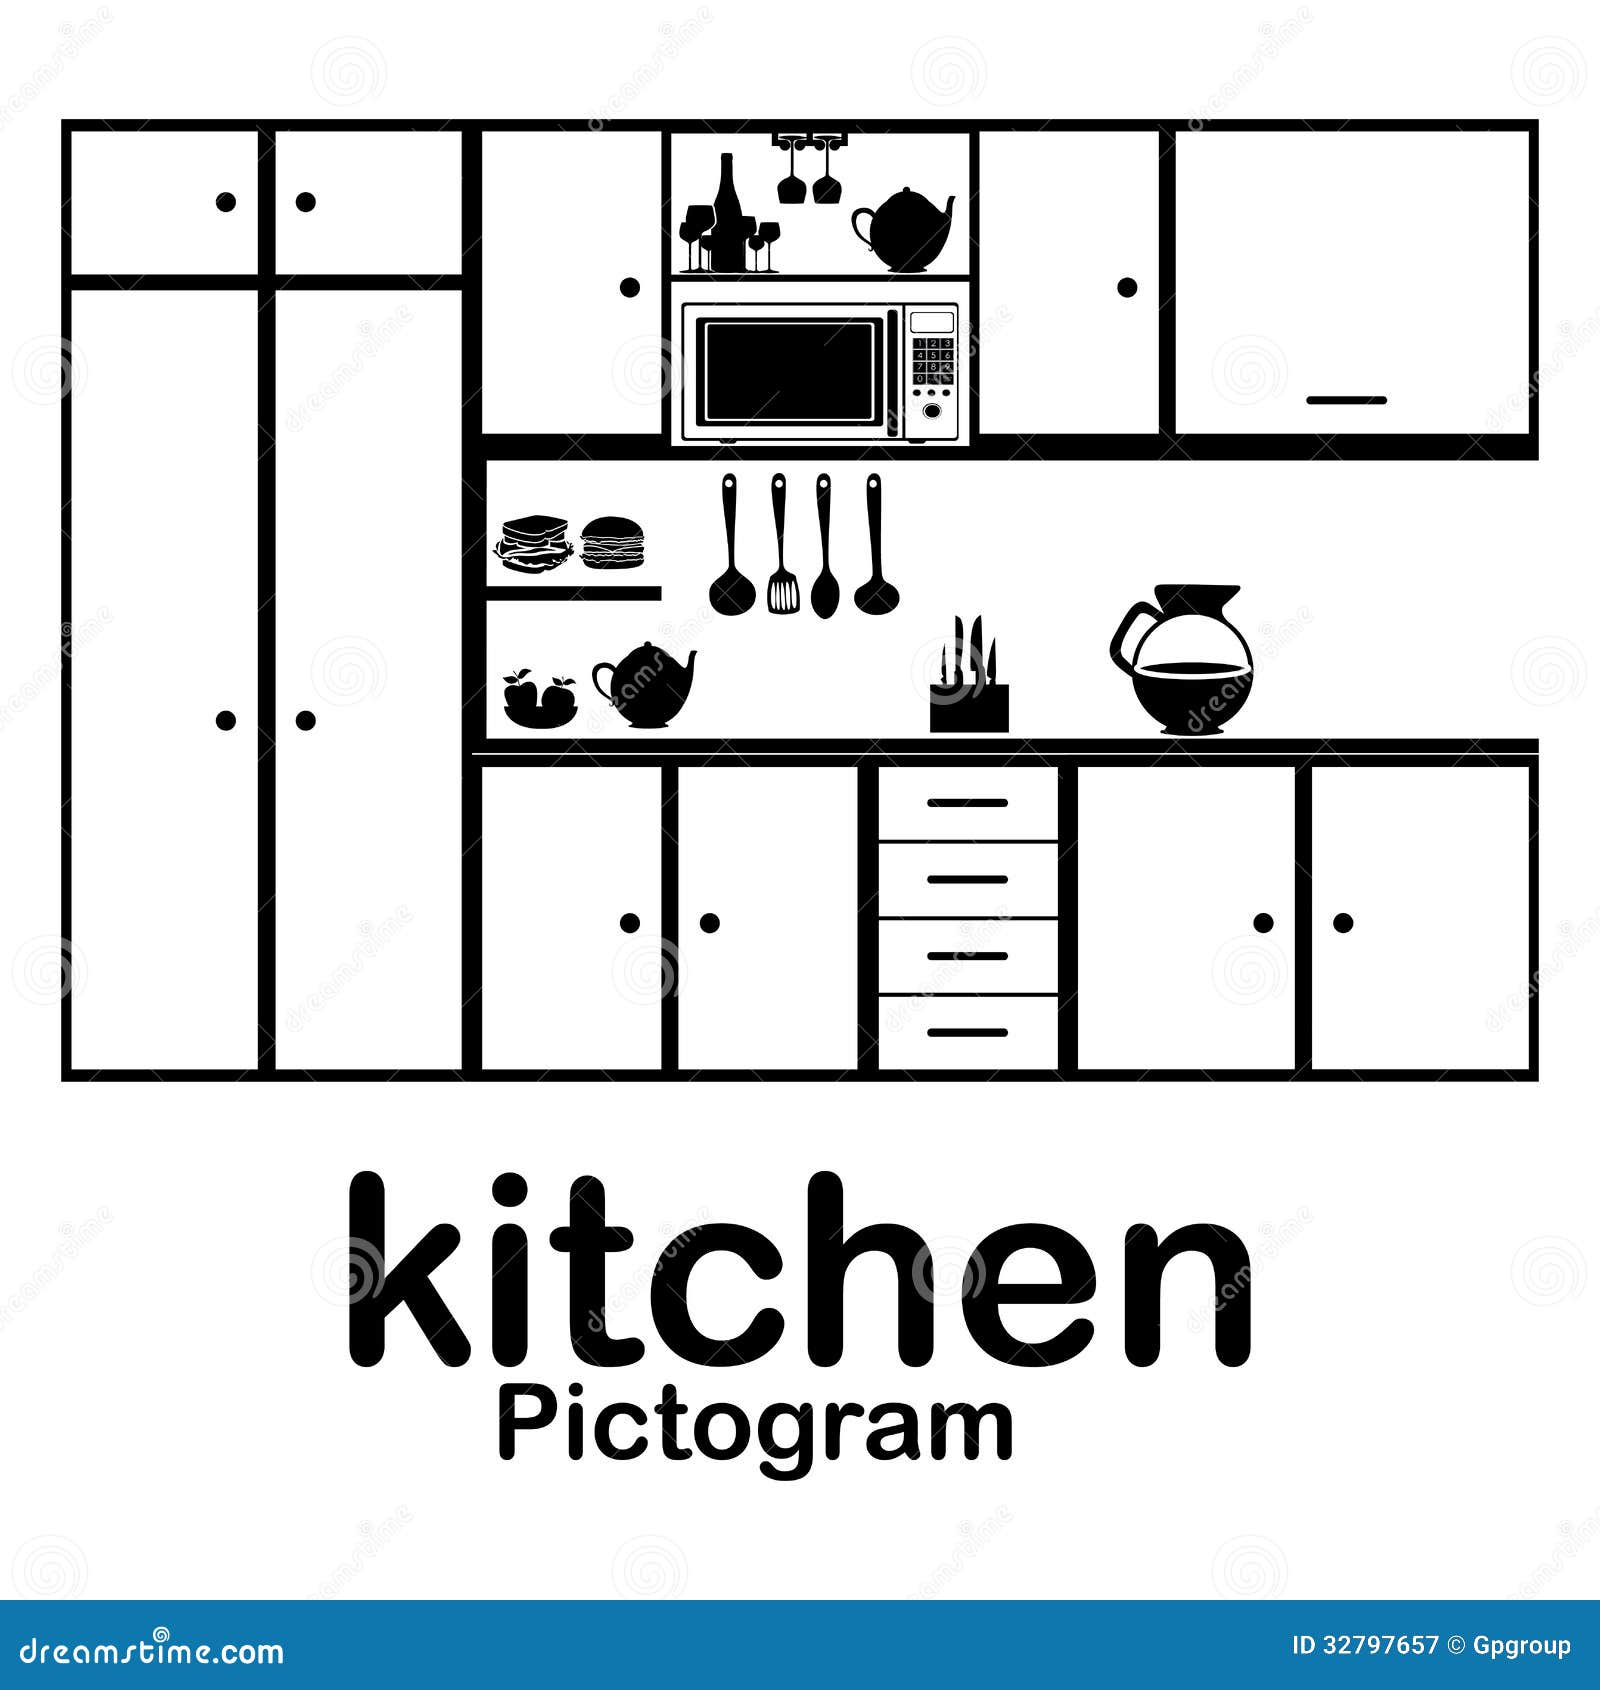 home kitchen clip art - photo #19